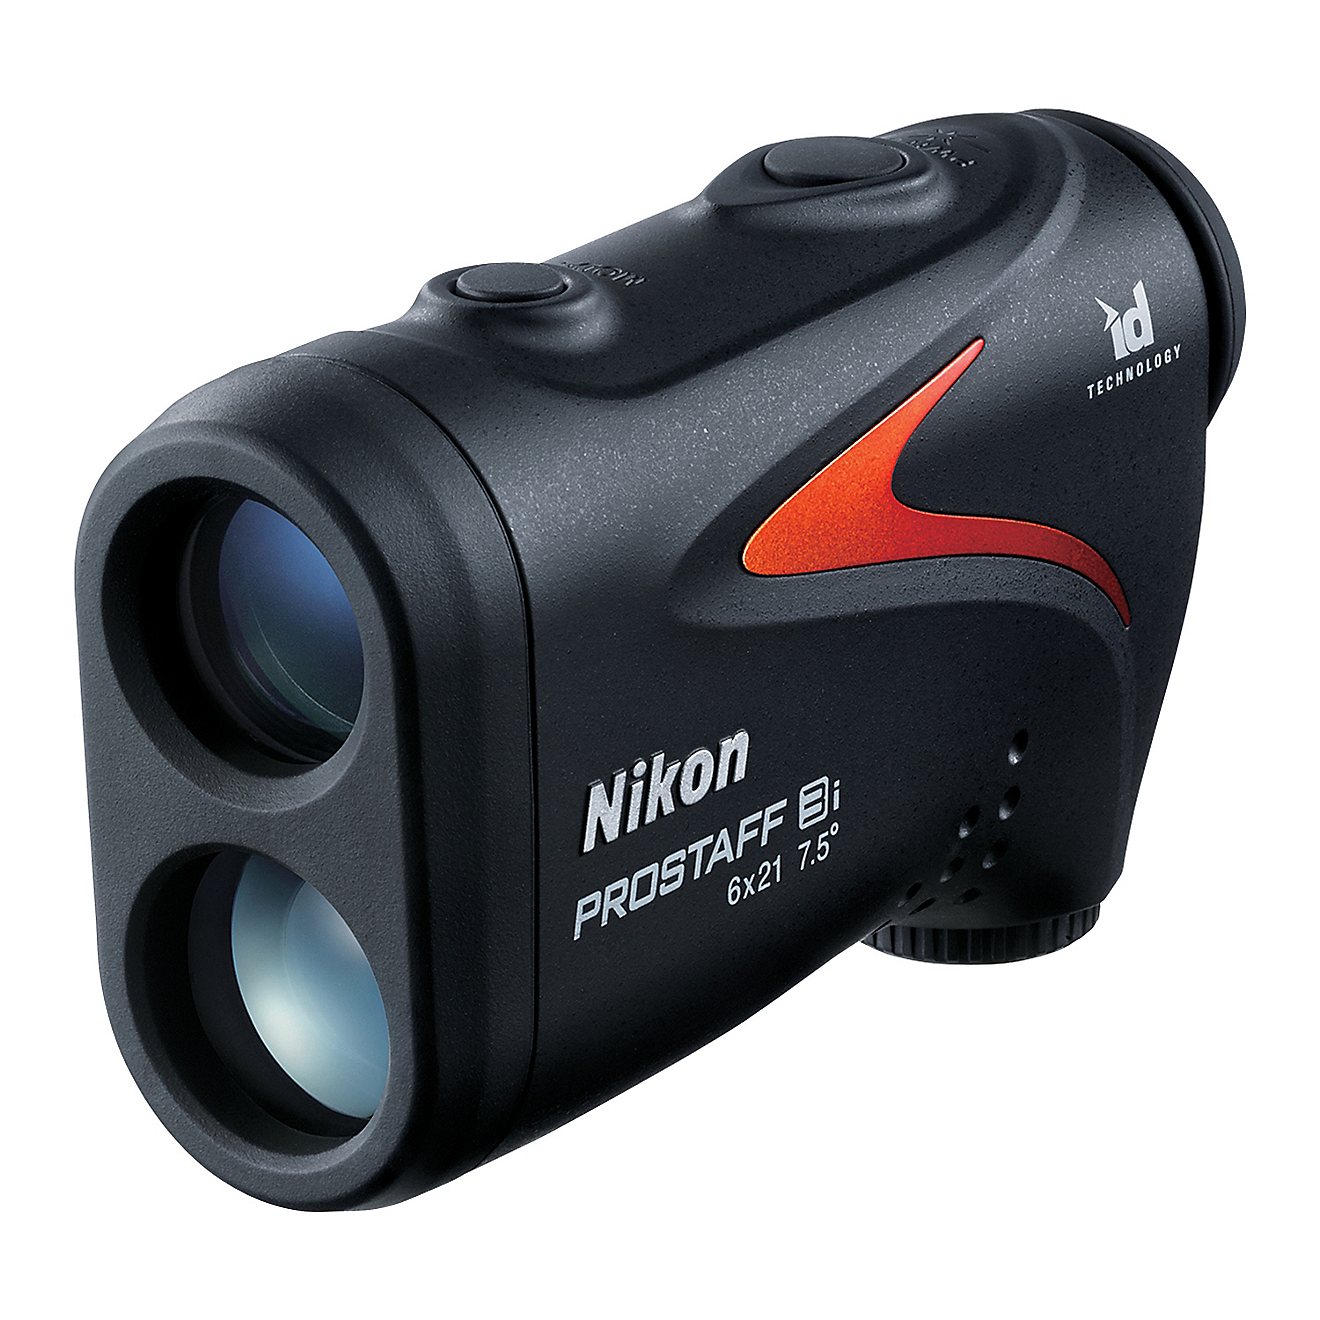 Nikon ProStaff 3i Laser Range Finder                                                                                             - view number 1